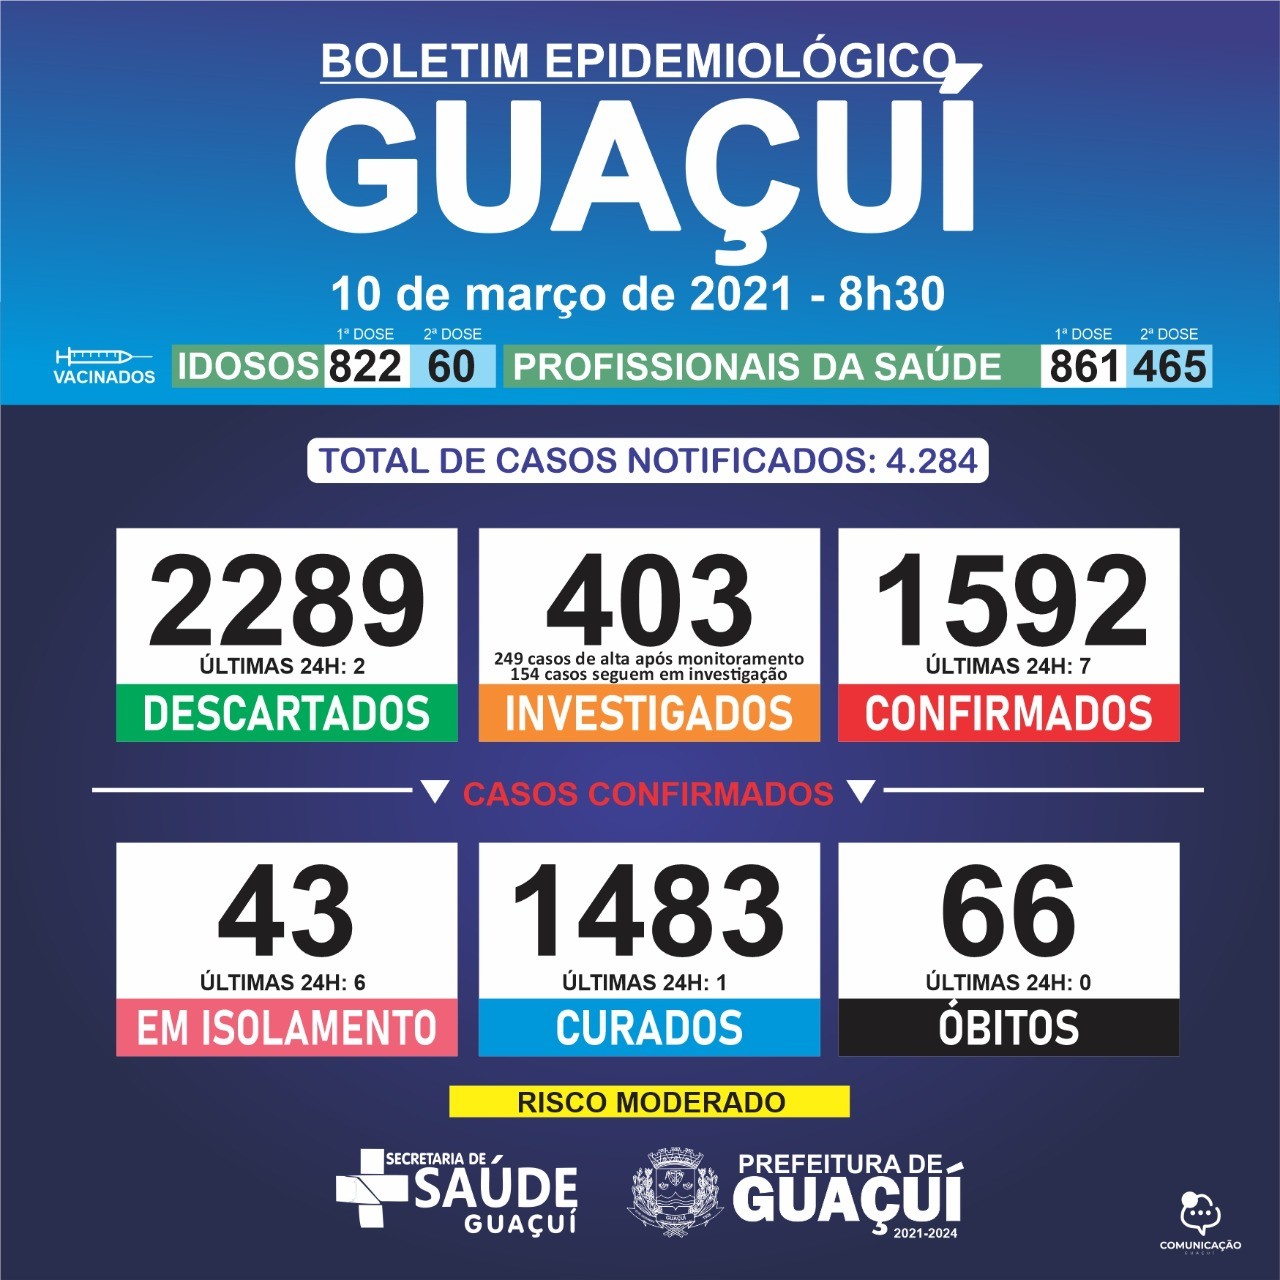 Boletim Epidemiológico 10/03/21: Guaçuí registra 1 curado e 7 casos confirmados de Covid-19 nas últimas 24 horas